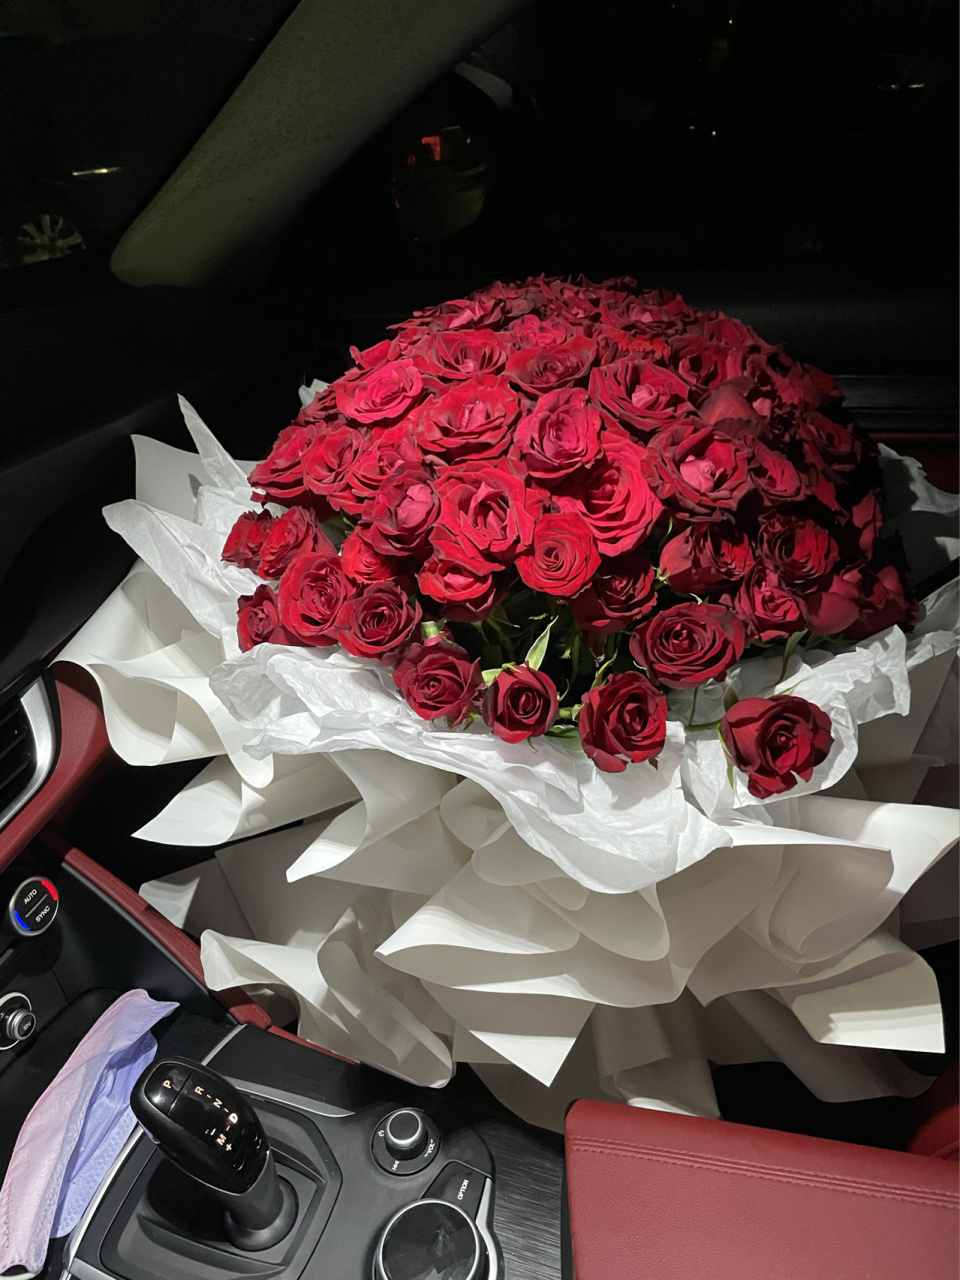 副驾驶玫瑰花 女孩子真的喜欢花 喜欢玫瑰花 仅此而已